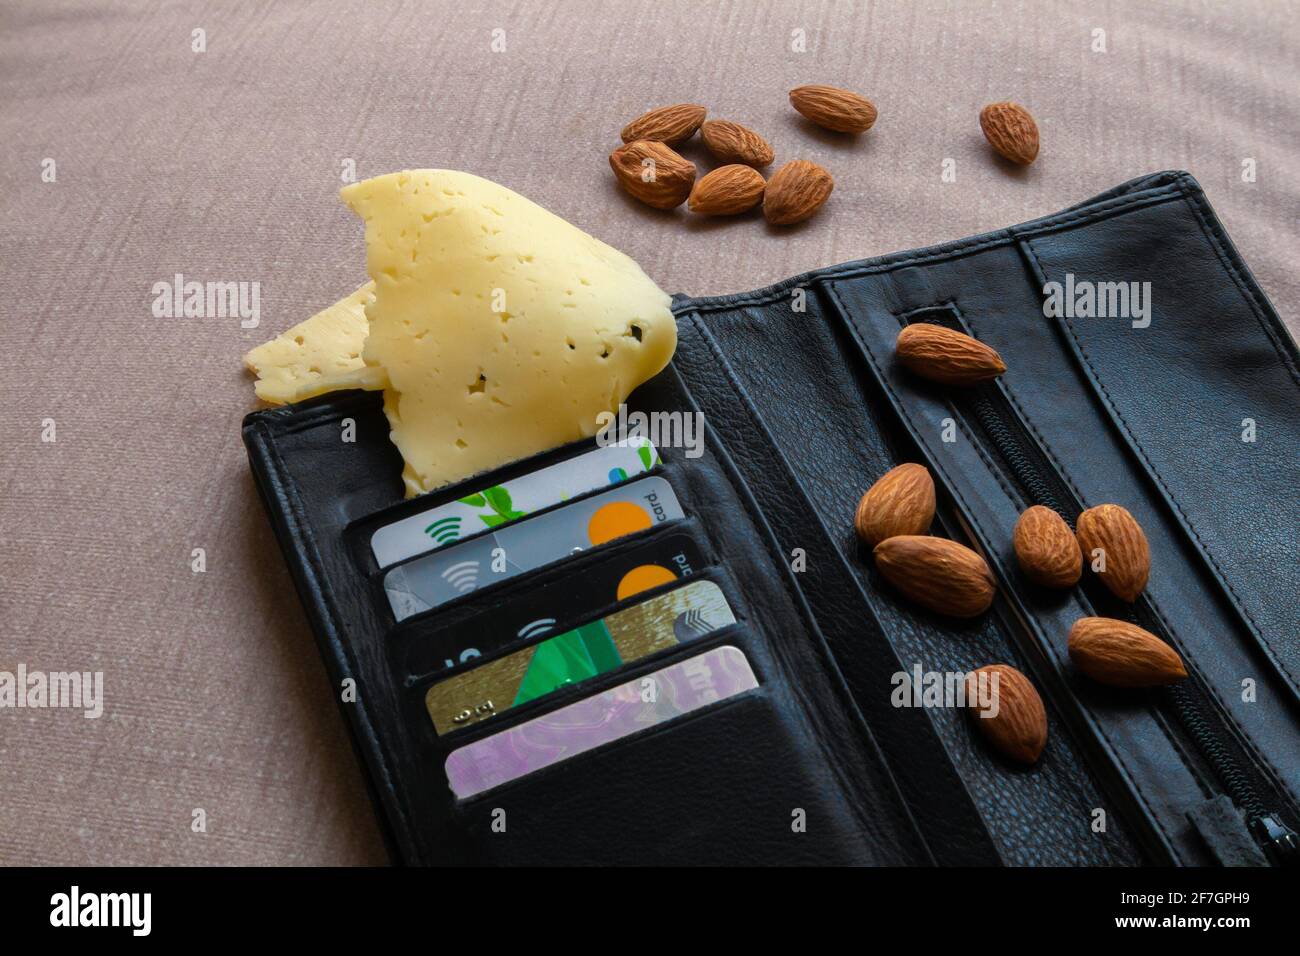 Foto scherzo, portafoglio in pelle nera con carte di credito, mandorla e formaggio, foto assurda Foto Stock